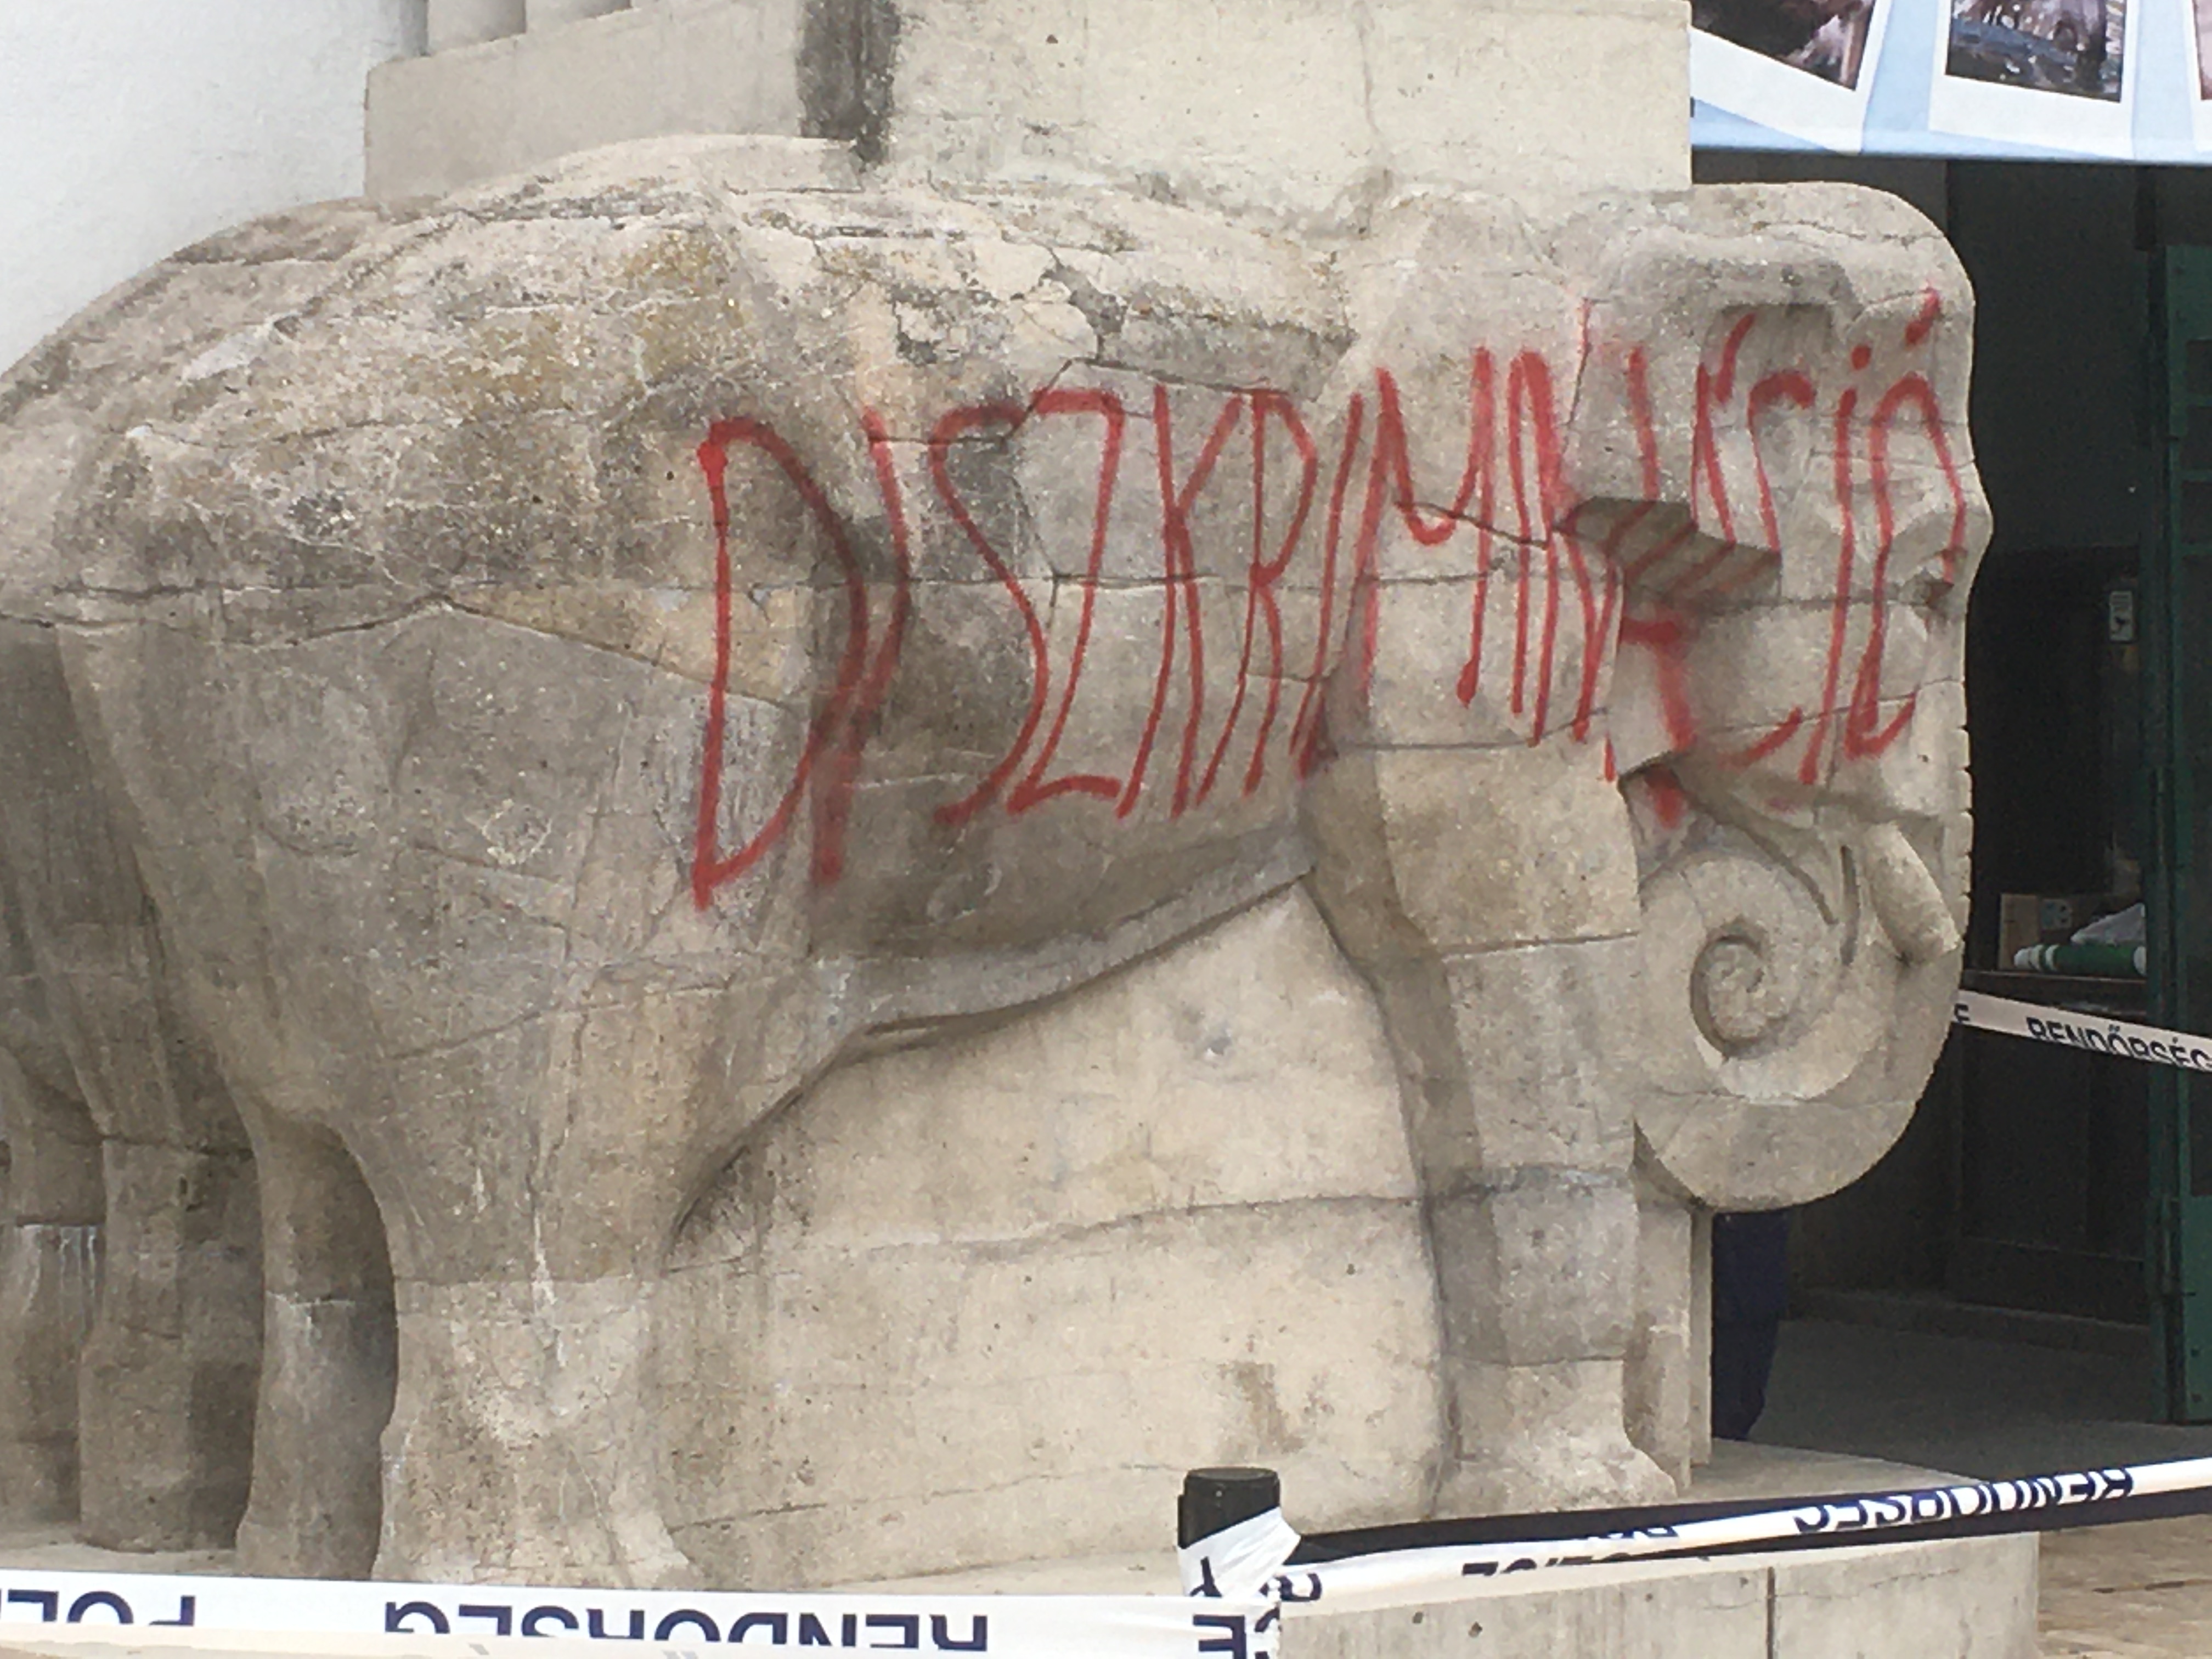 Valaki a DISZKRIMINÁCIÓ szóval csúfította el a Budapesti Állatkert bejáratának elefántját